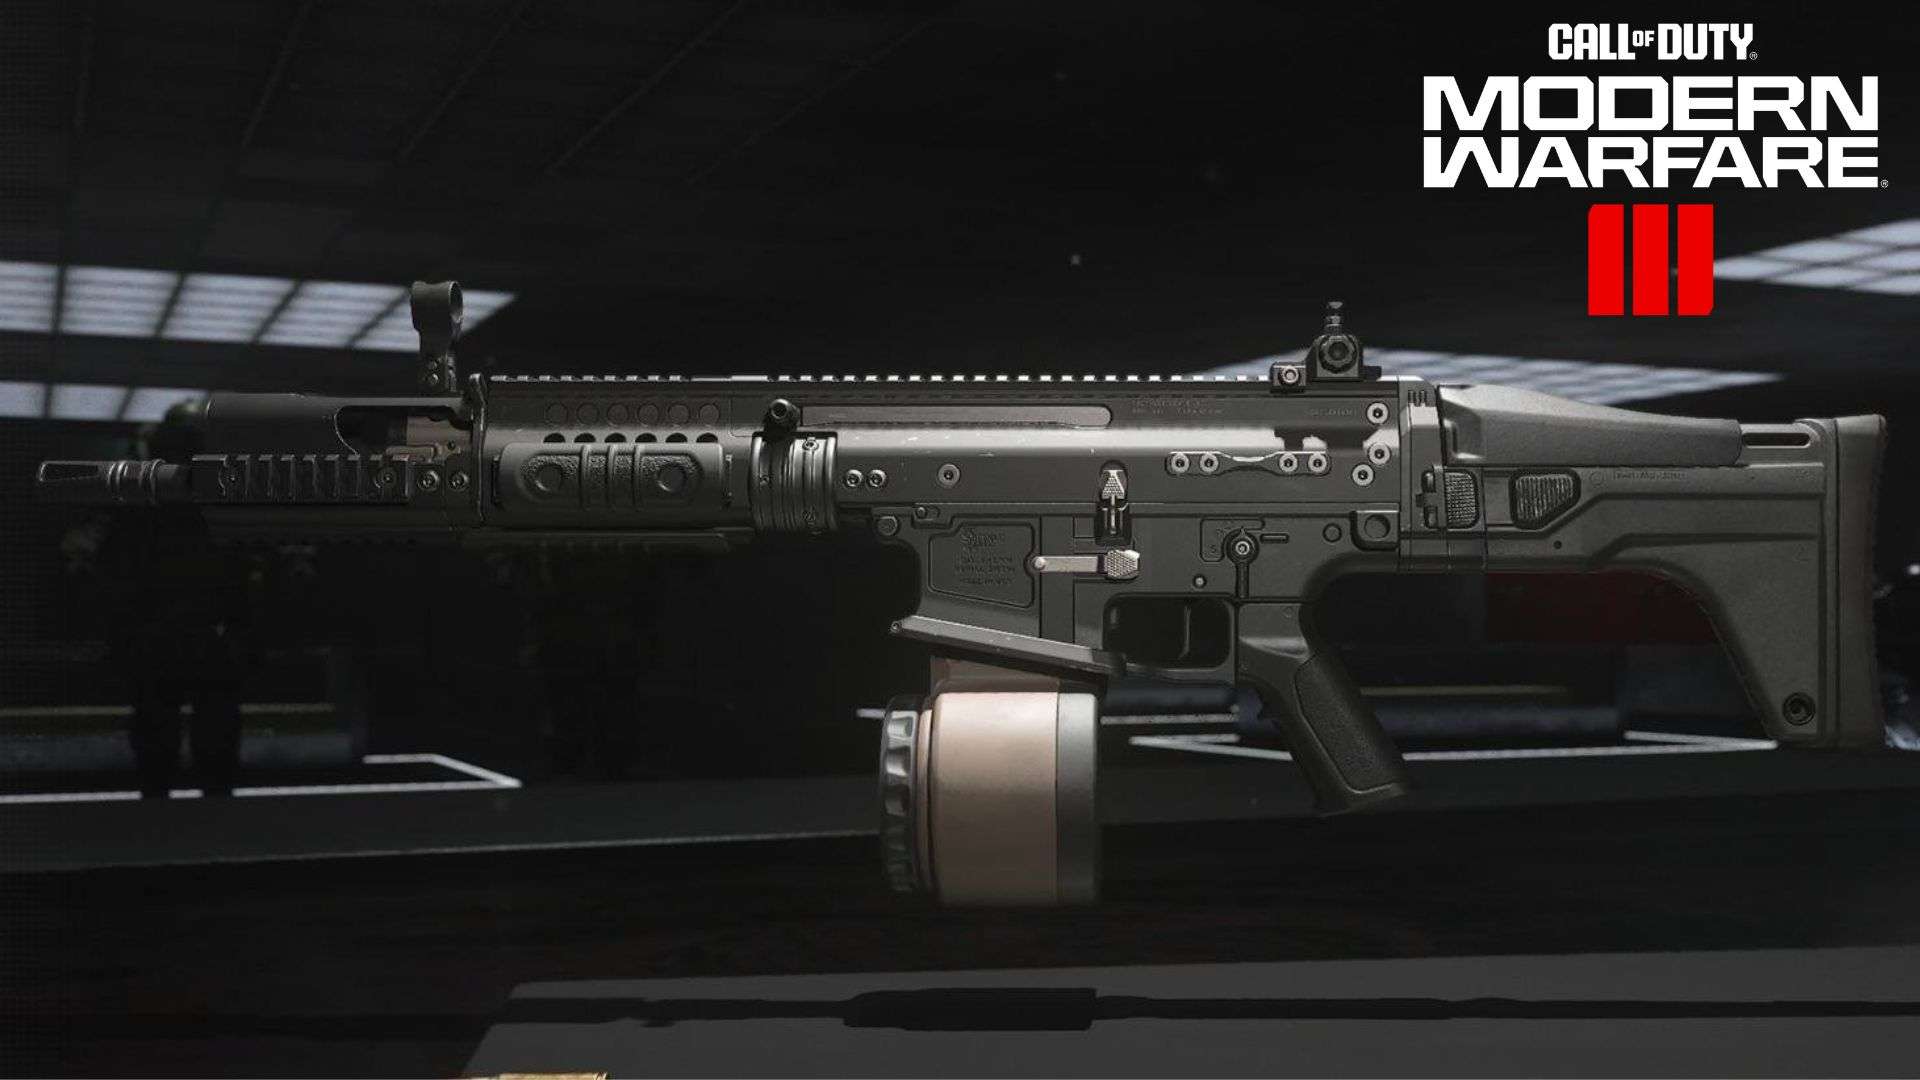 TAQ Eradicator LMG in Modern Warfare with game logo in corner